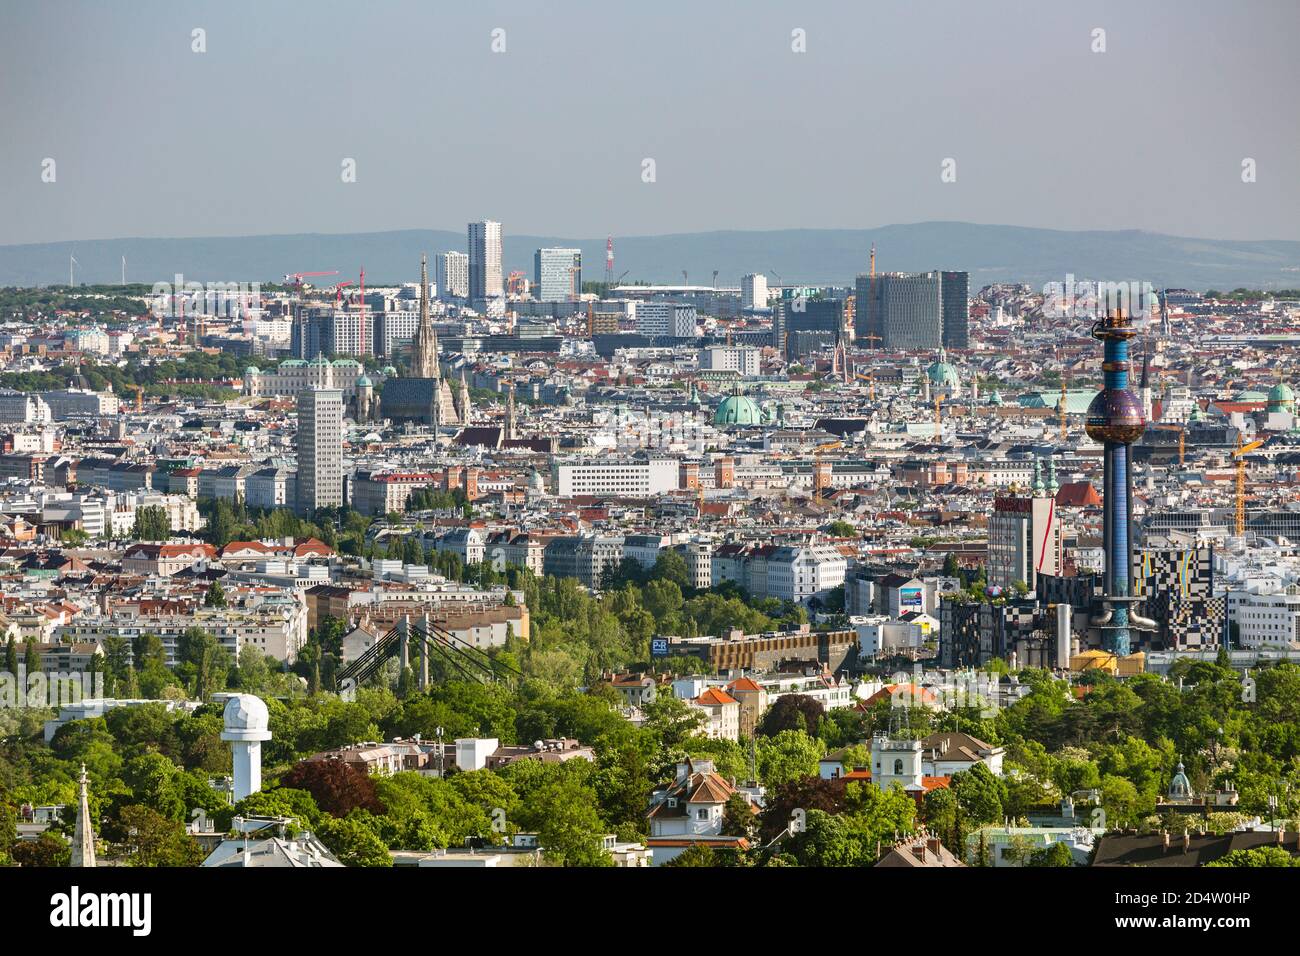 VIENNA-6 MAGGIO: Vista da una collina al centro di Vienna con la torre dell'impianto di incenerimento dei rifiuti Spittelau a destra, Austria il 6 maggio; Foto Stock